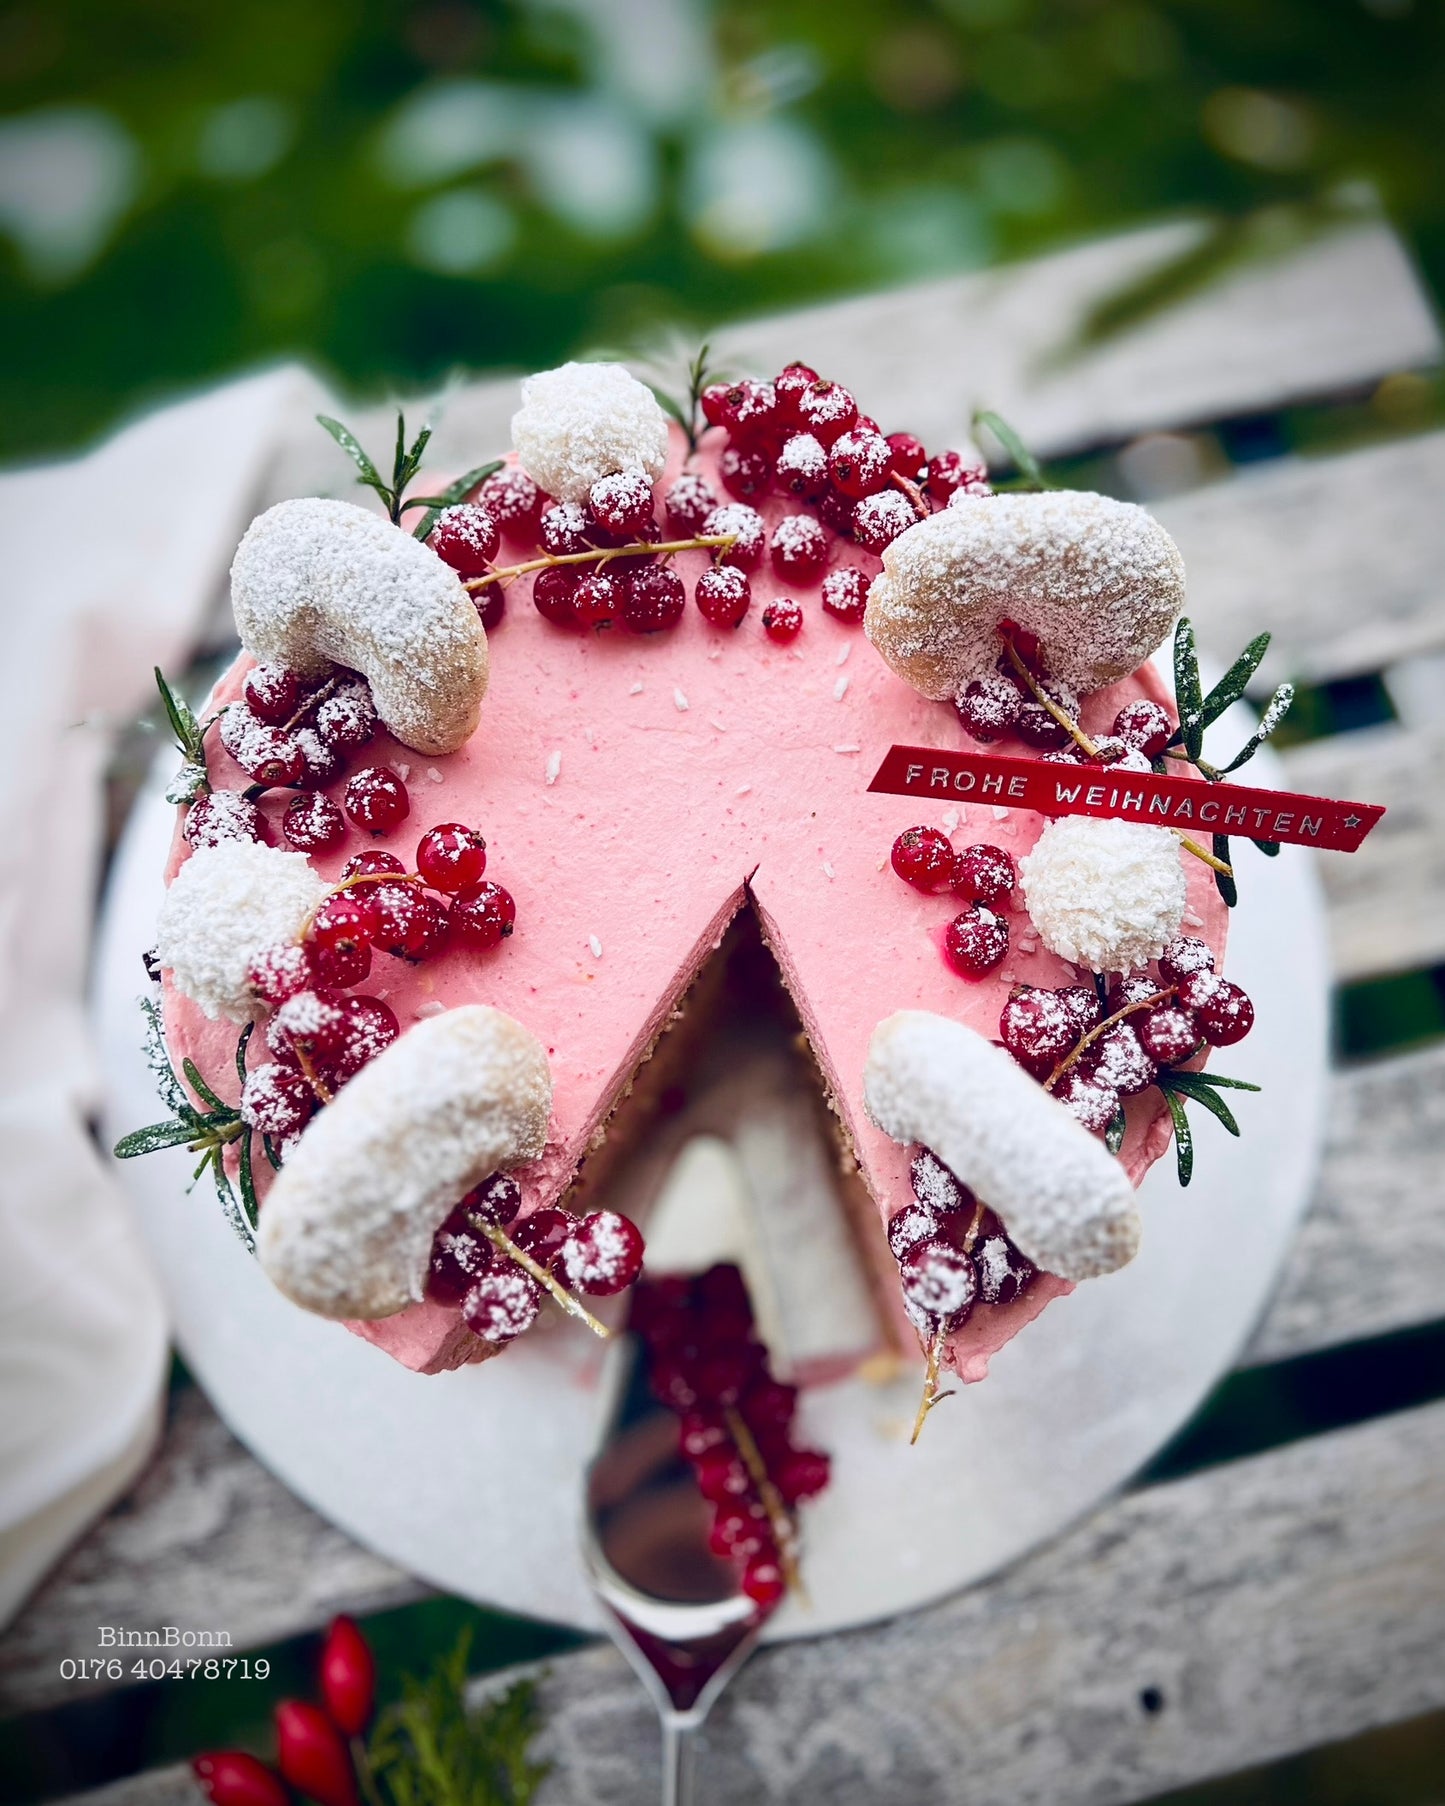 25. Torte "Pretty Christmas" mit Vanillekipferl und frischen Beeren 22 cm